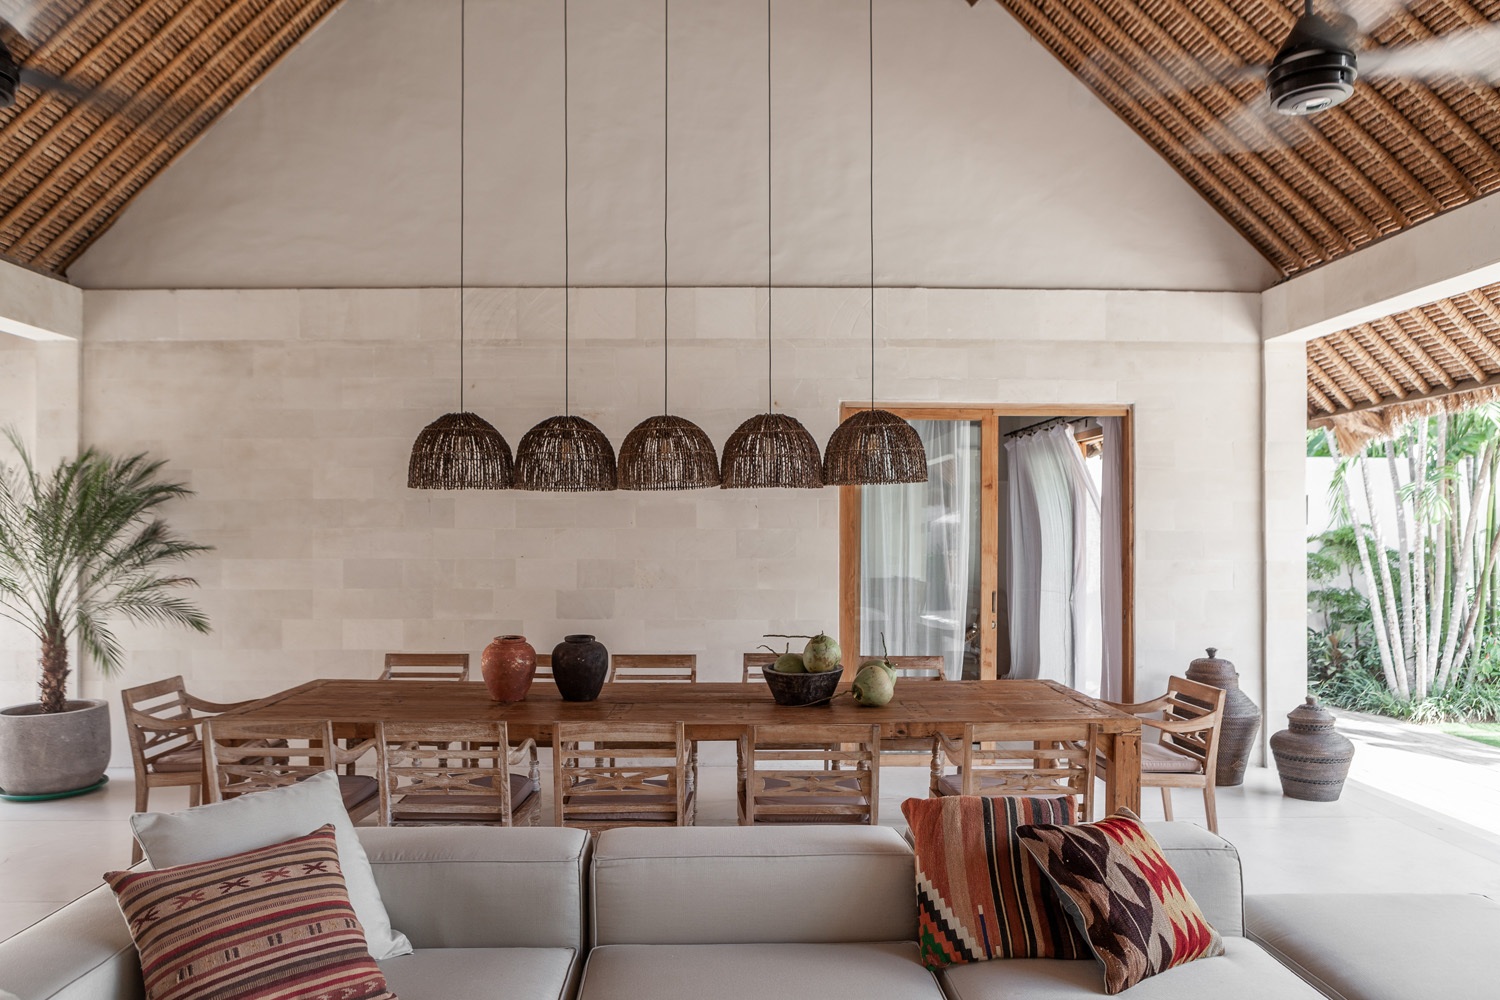 Design Assembly - Villa Massilia - Bali Architect - Interior Design - Bali Villa - Living Dining